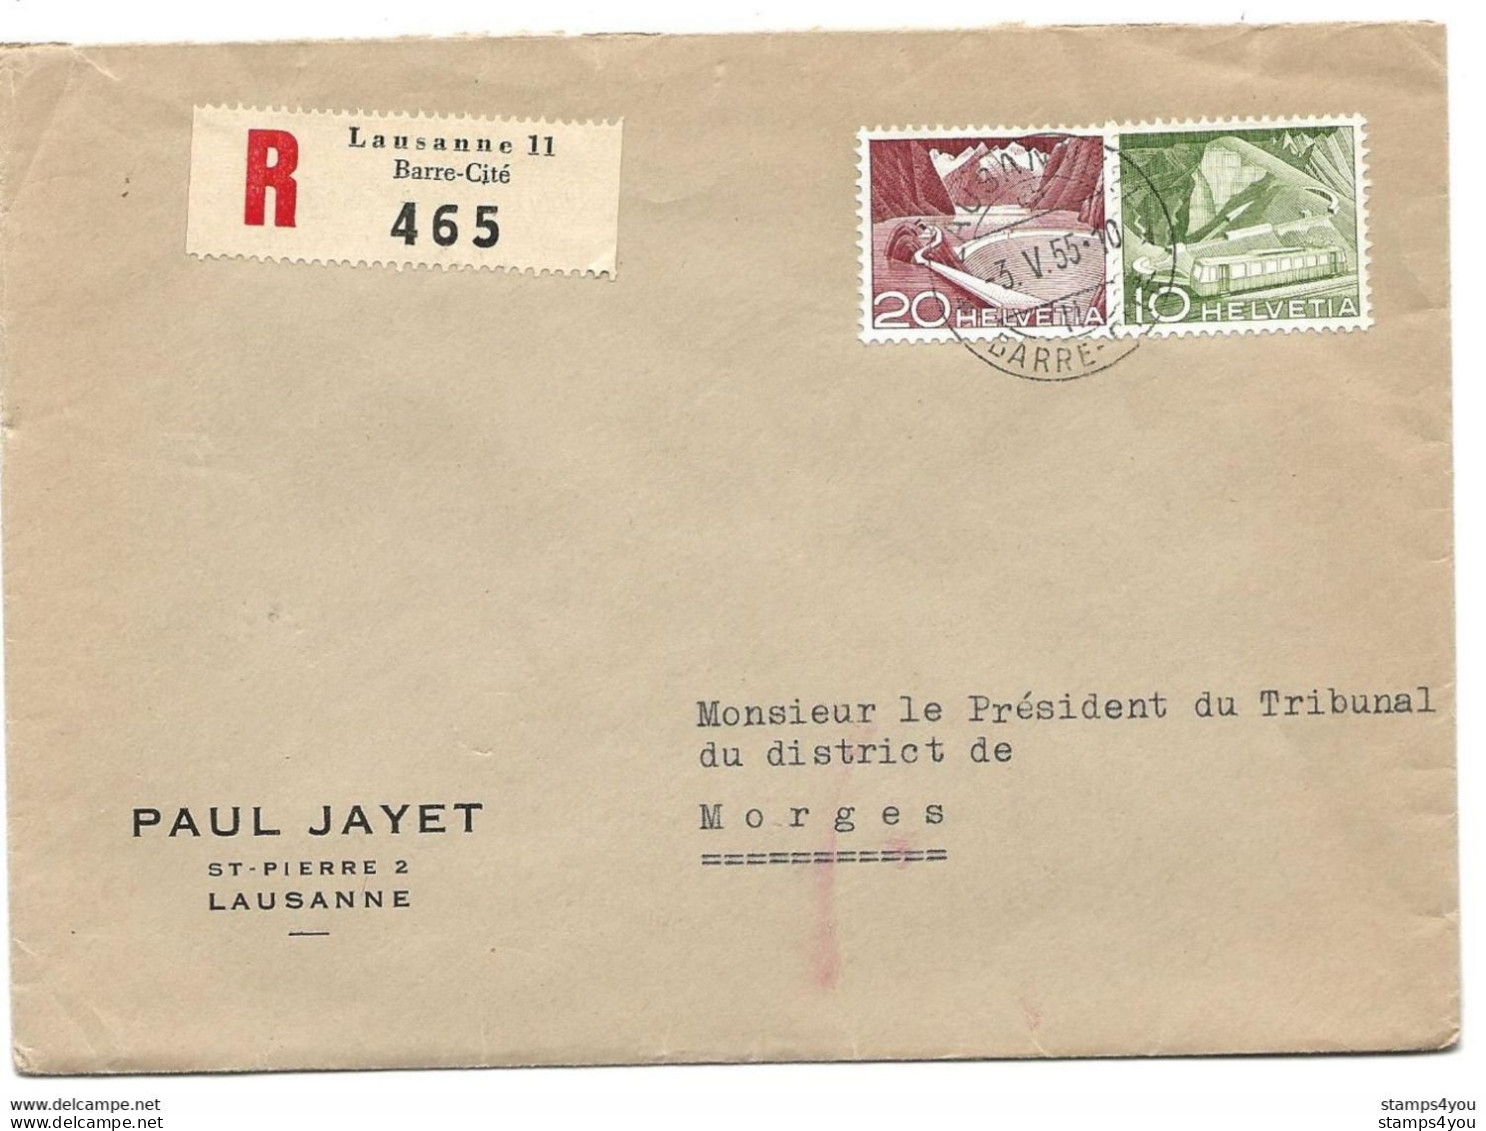 115 - 22 - Enveloppe Recommandée Envoyée De Lausanne  Gare-Cité 1955 - Cartas & Documentos